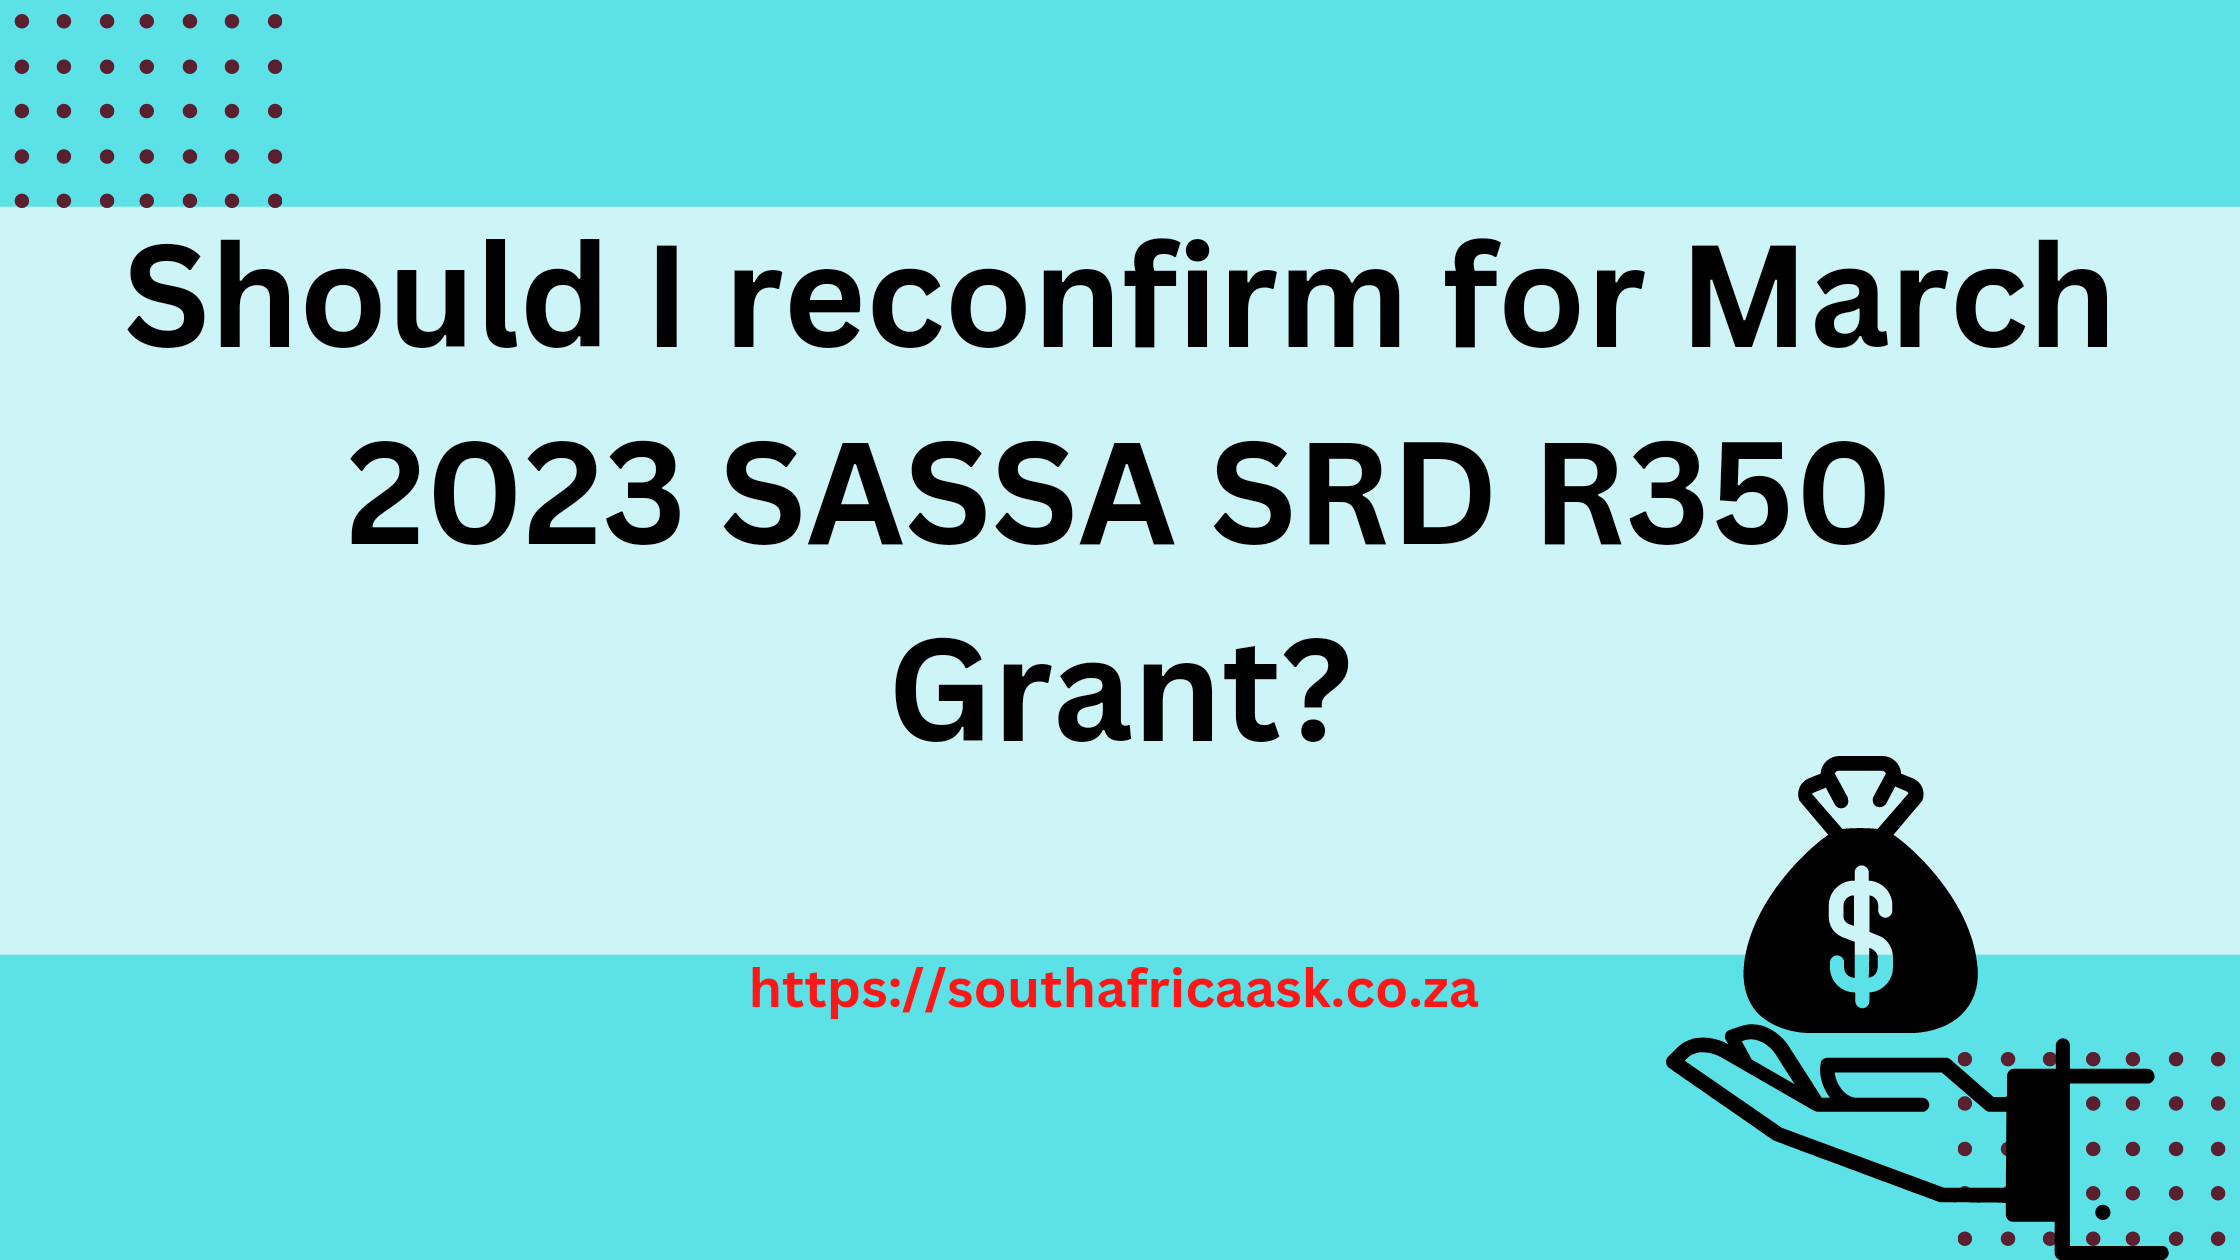 Should I reconfirm for March 2023 SASSA SRD R350 Grant?